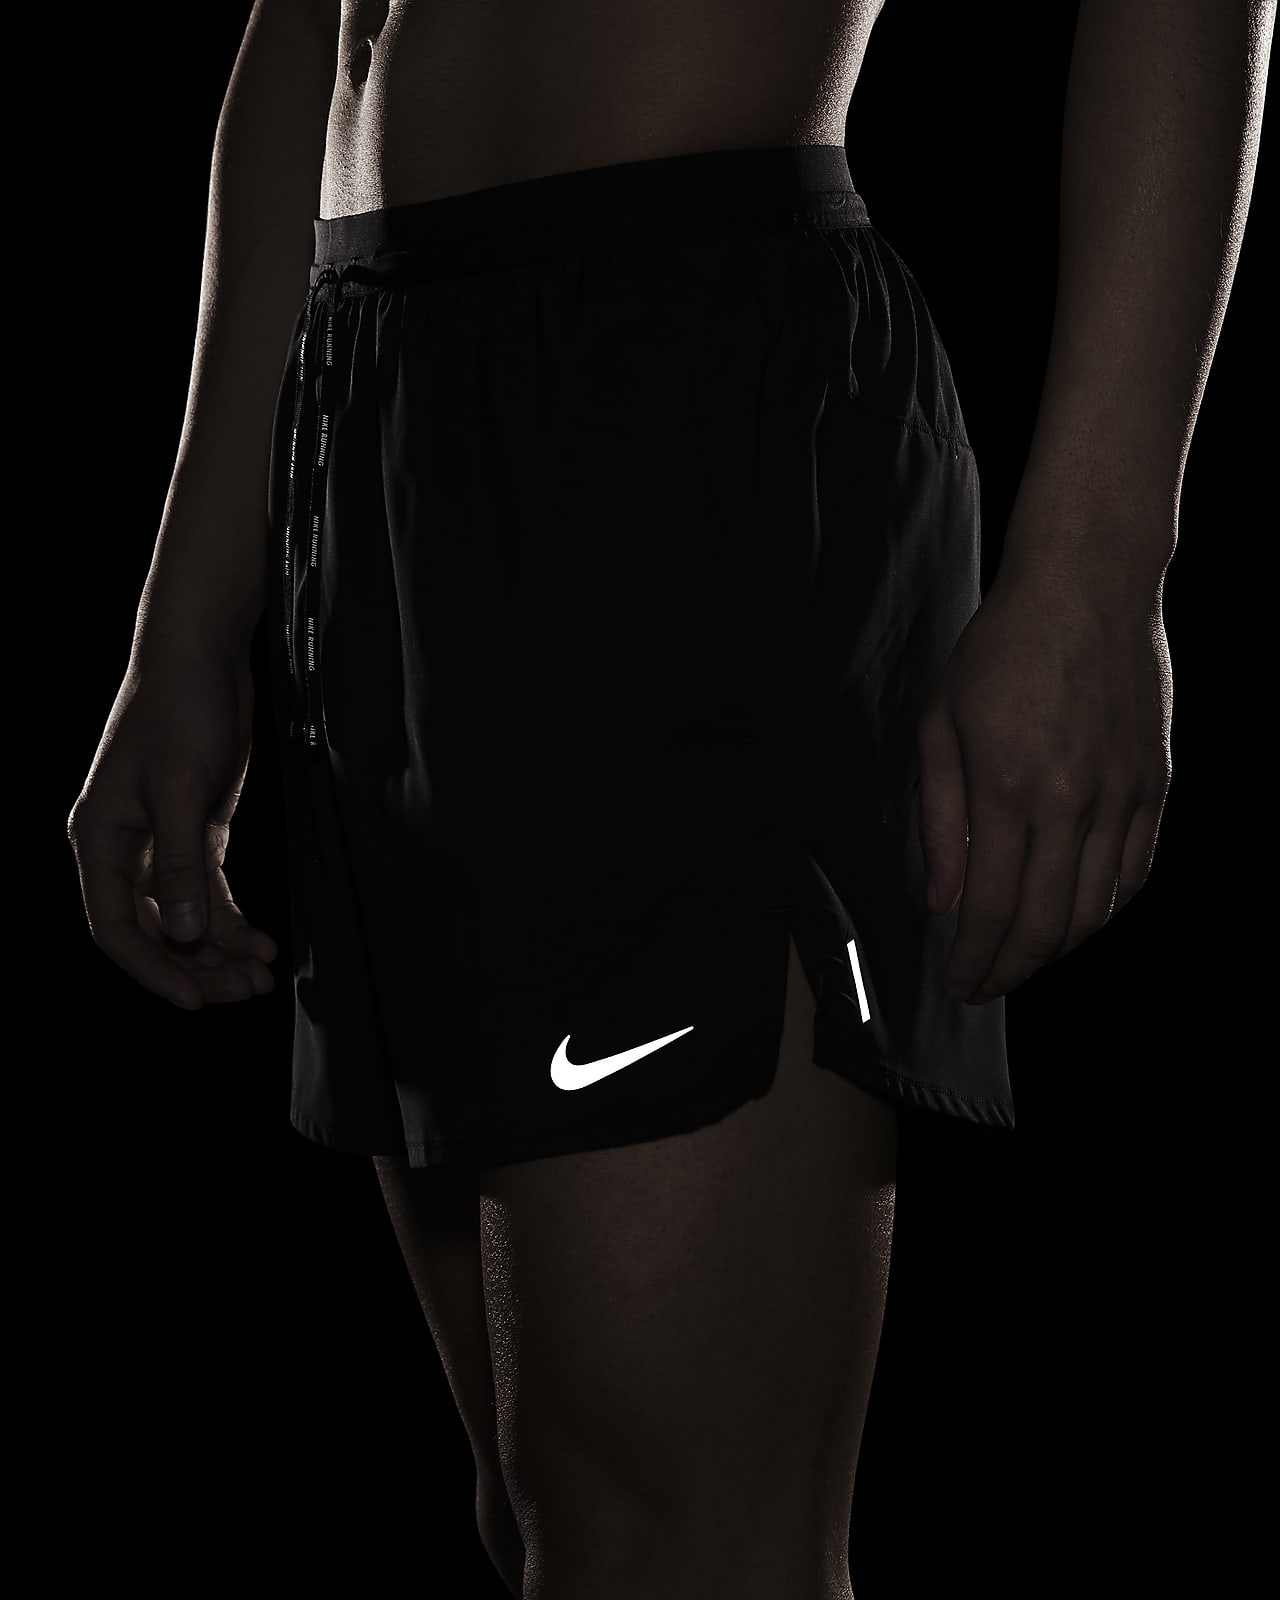 Nike Flex Stride Men's Unlined Running Shorts. Nike SG